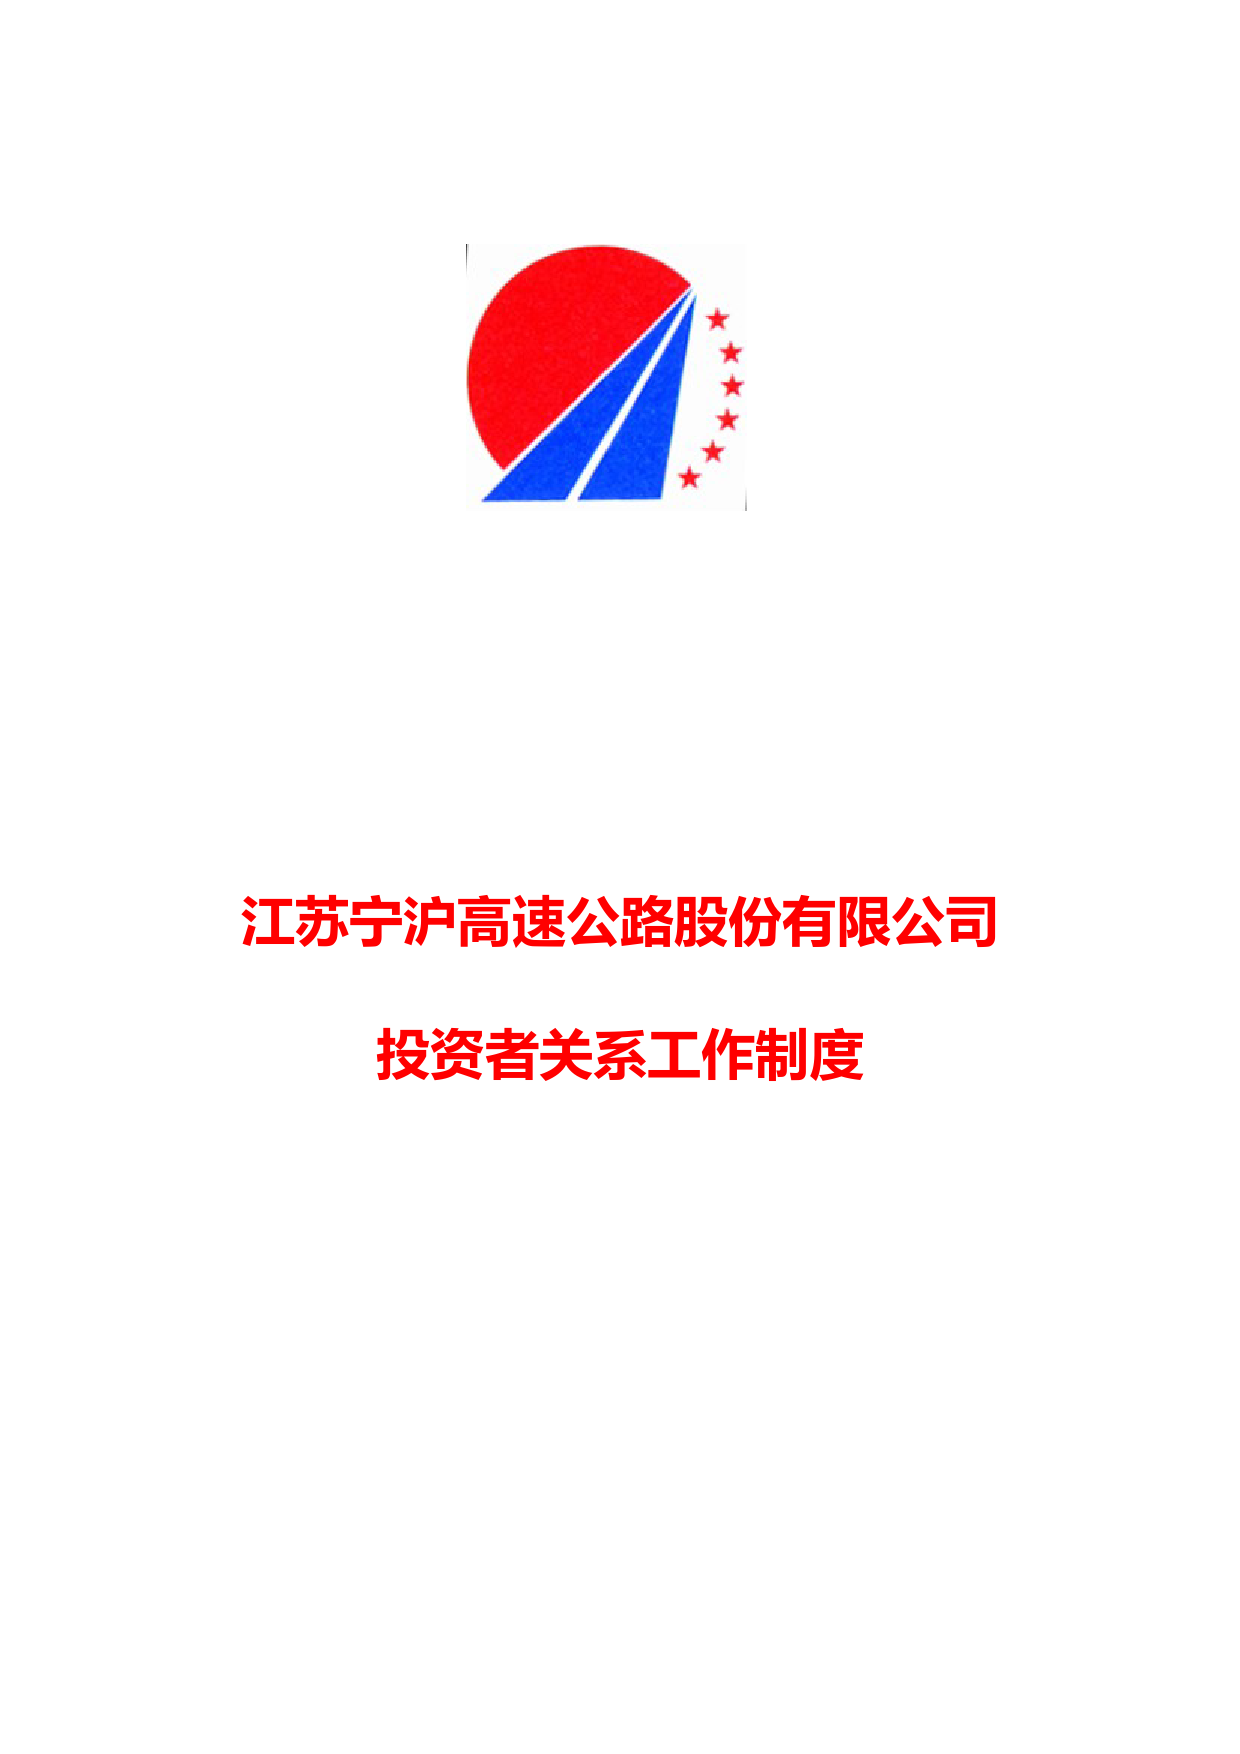 江苏宁沪高速公路股份有限公司投资者关系管理制度